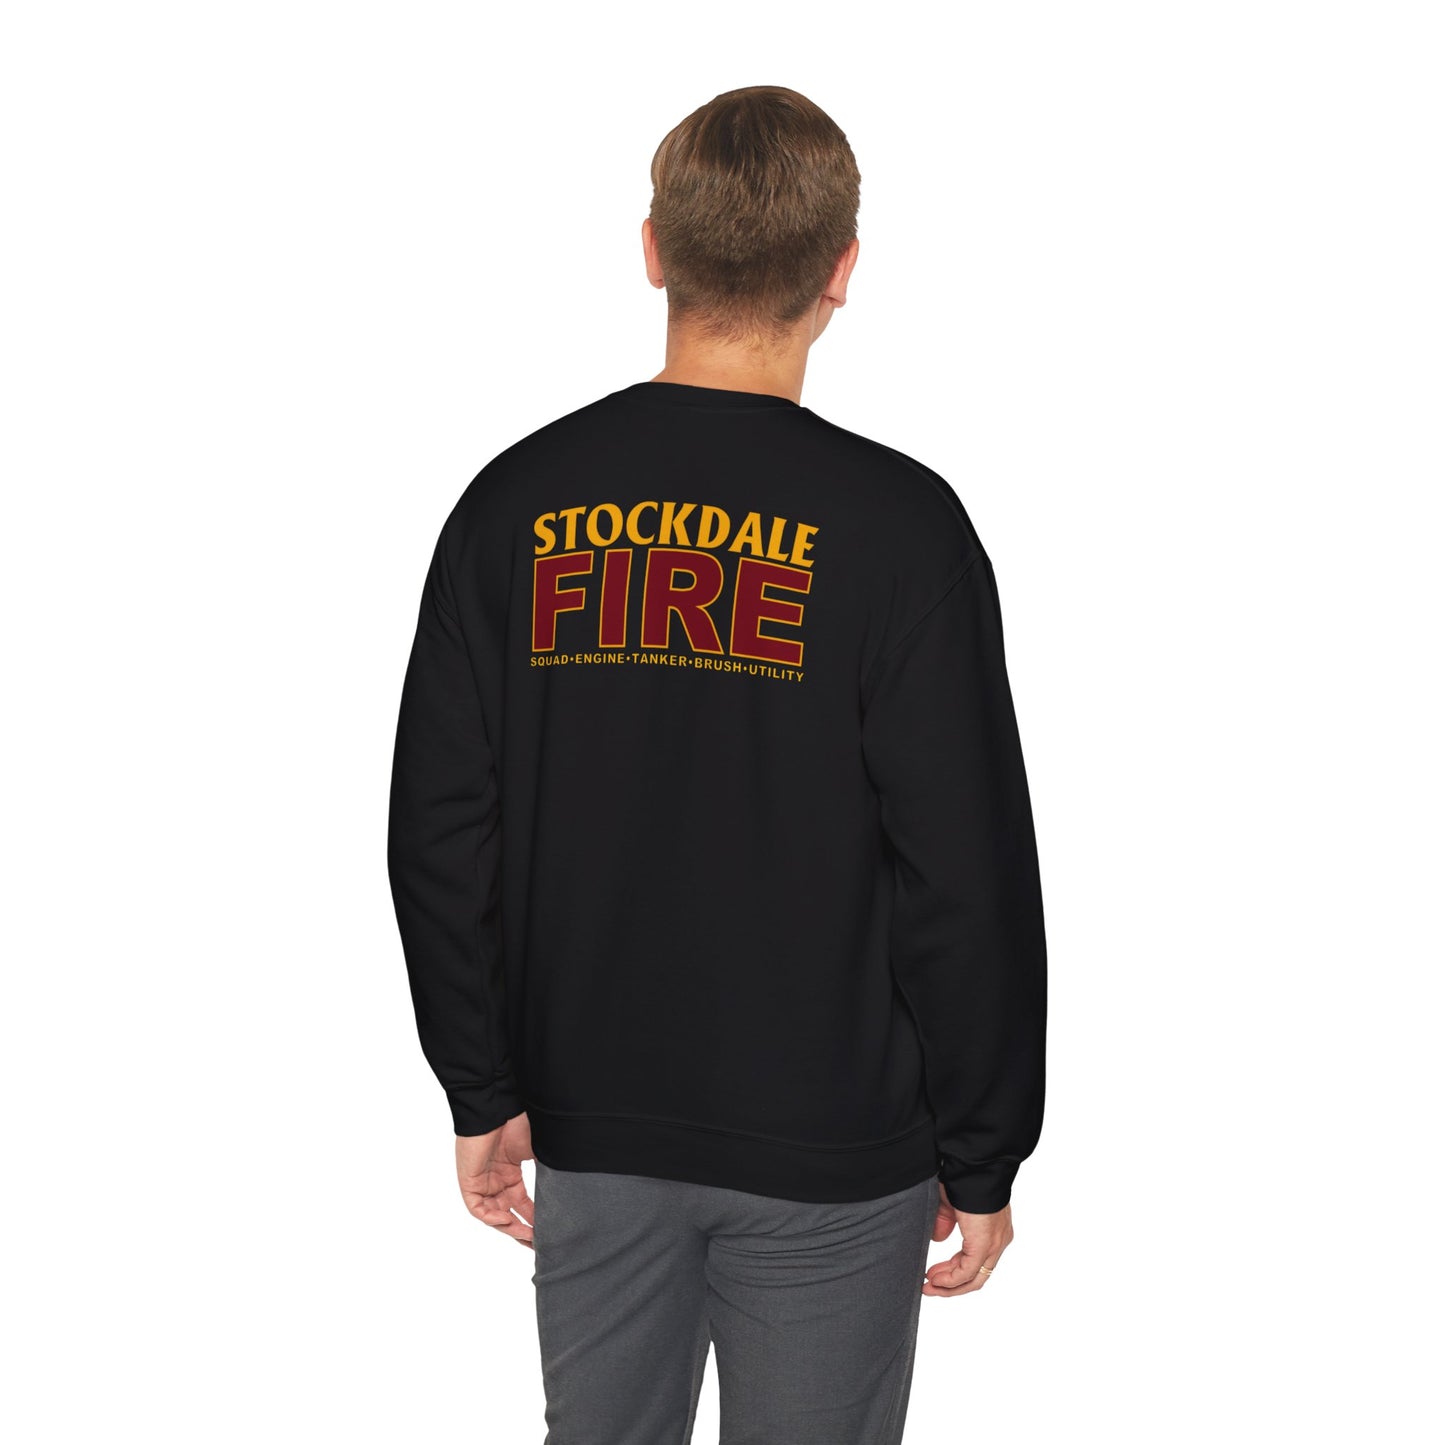 Stockdale Fire Sweatshirt